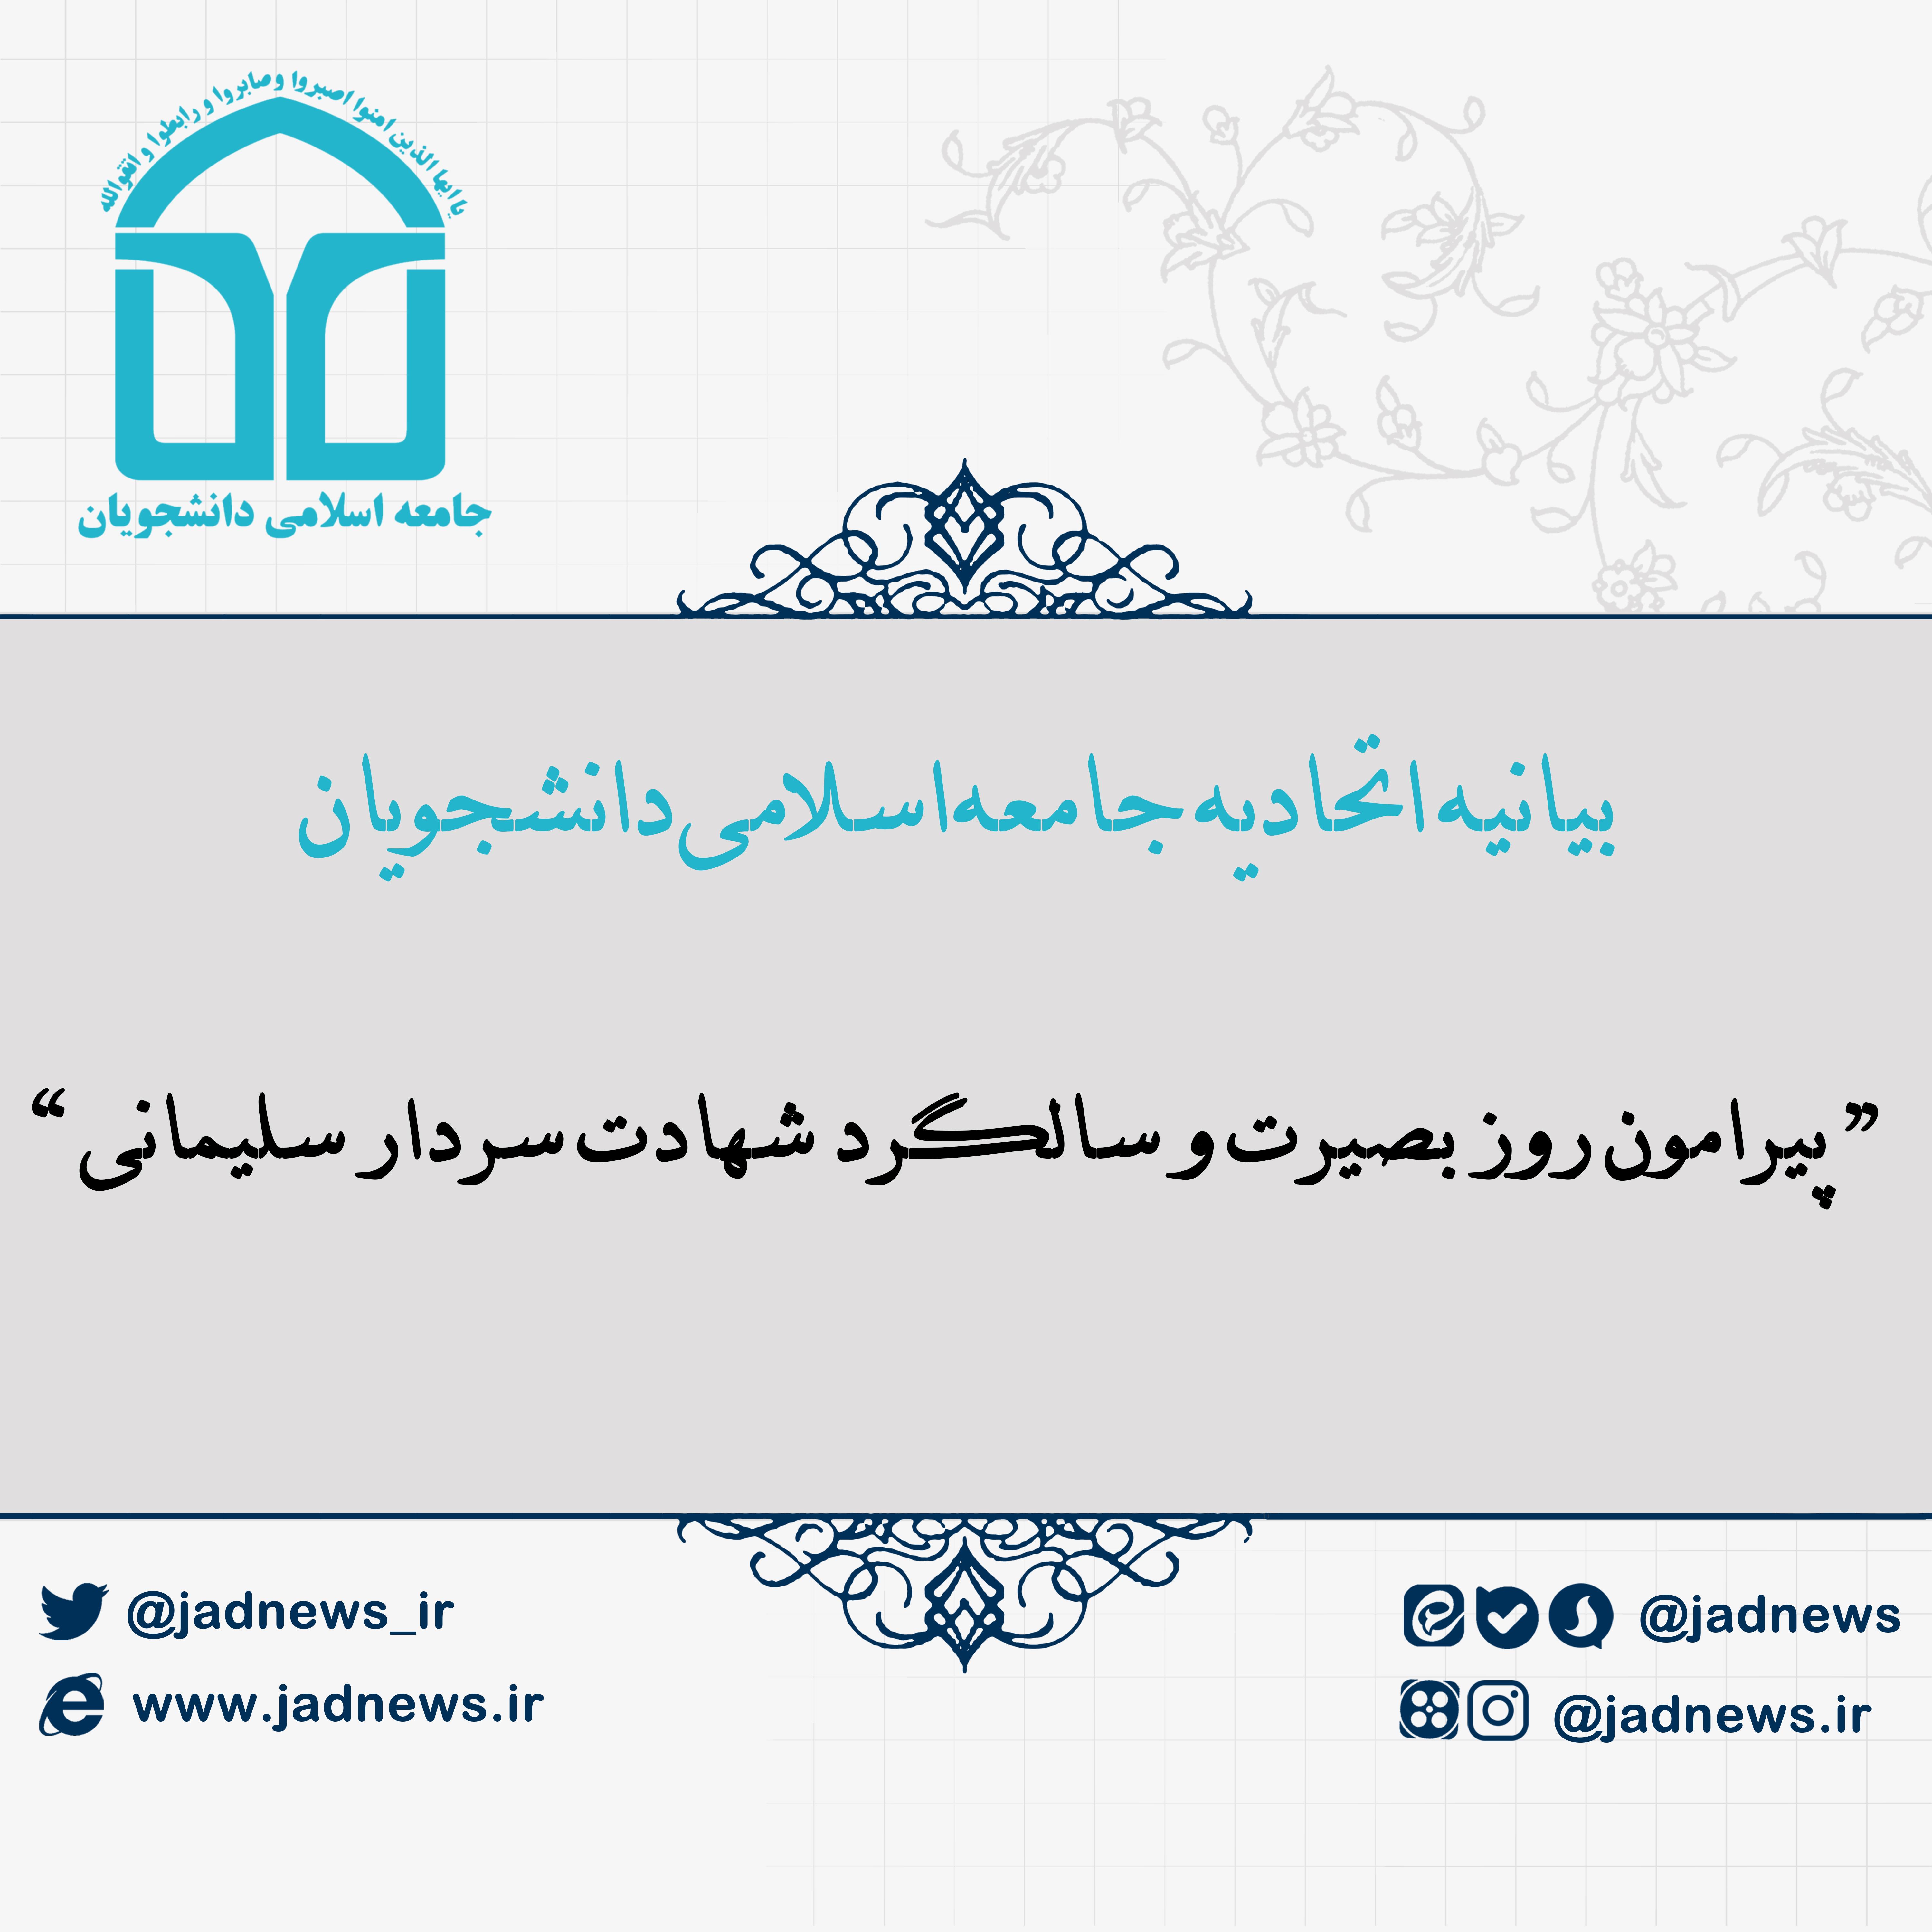 بیانیه اتحادیه جامعه اسلامی دانشجویان پیرامون روز بصیرت و سالگرد شهادت سردار سلیمانی